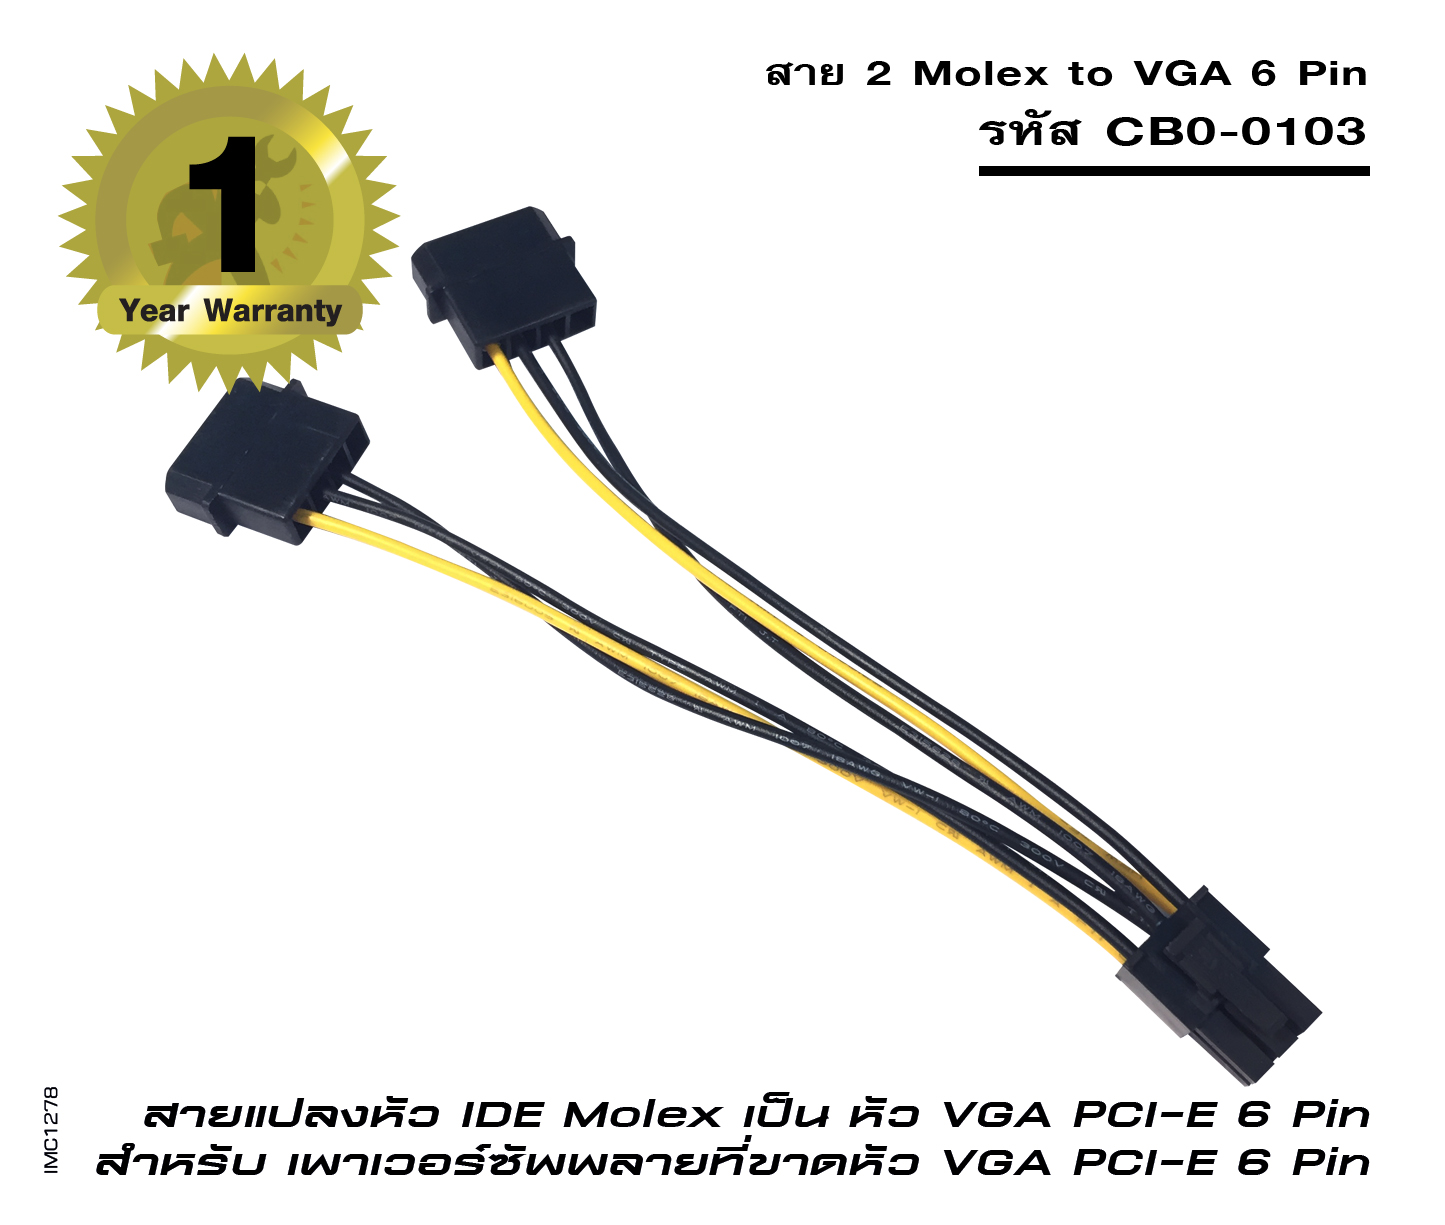 สาย 2 Molex to VGA 6 Pin (รหัส CB0-0103)